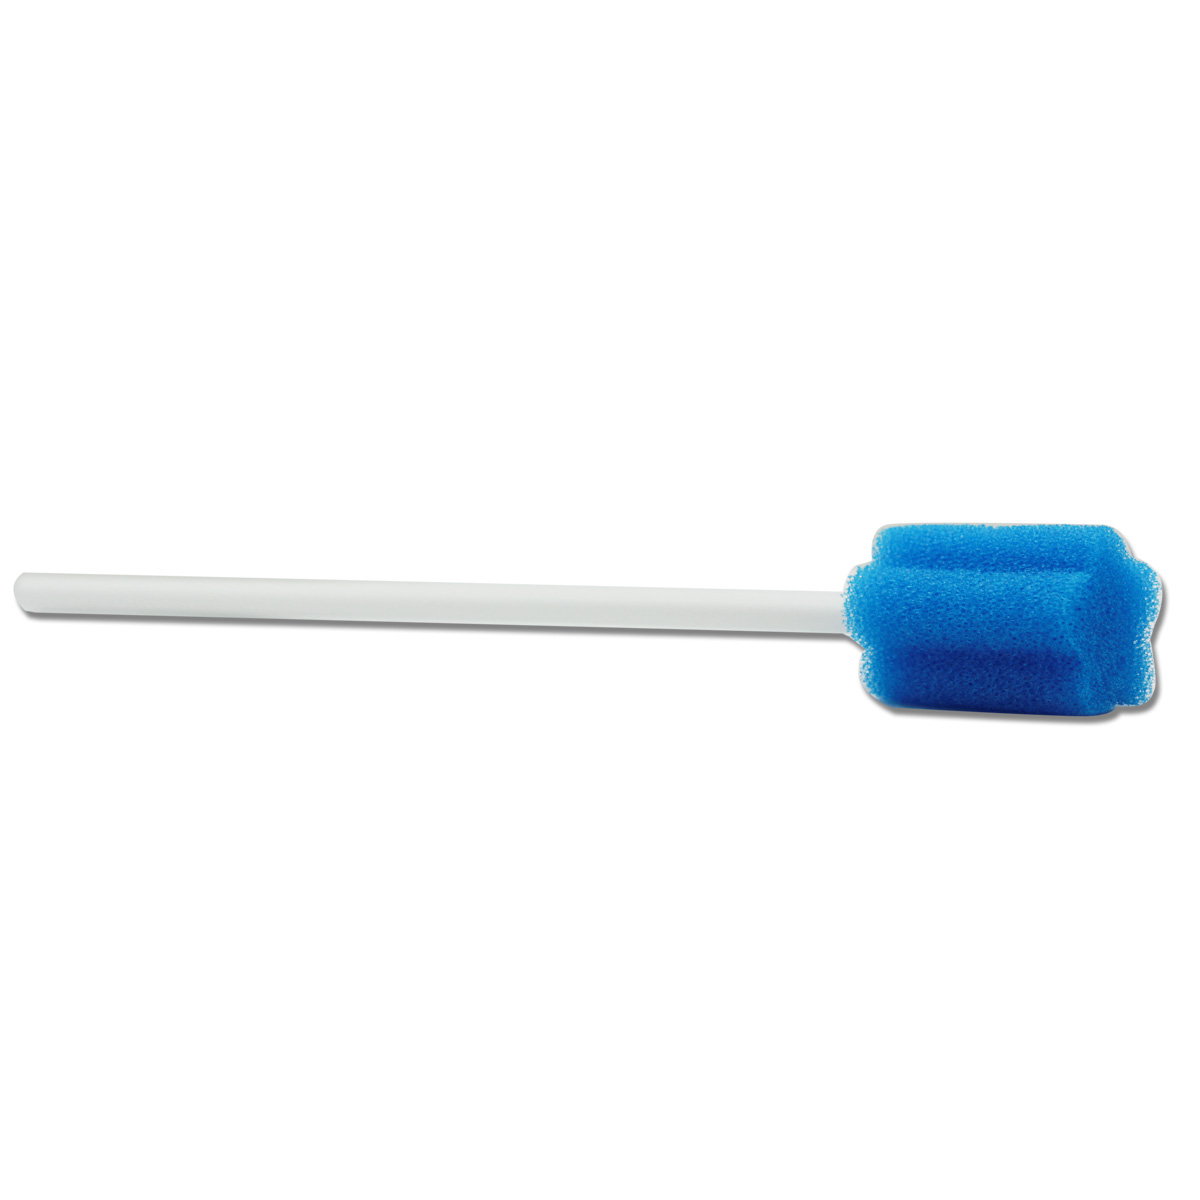 Einweg-Treated Unflavored Mundpflege Schwamm Tupfer - 15 Graf einzeln verpackt Swabsticks für Oral medizinischen Gebrauch